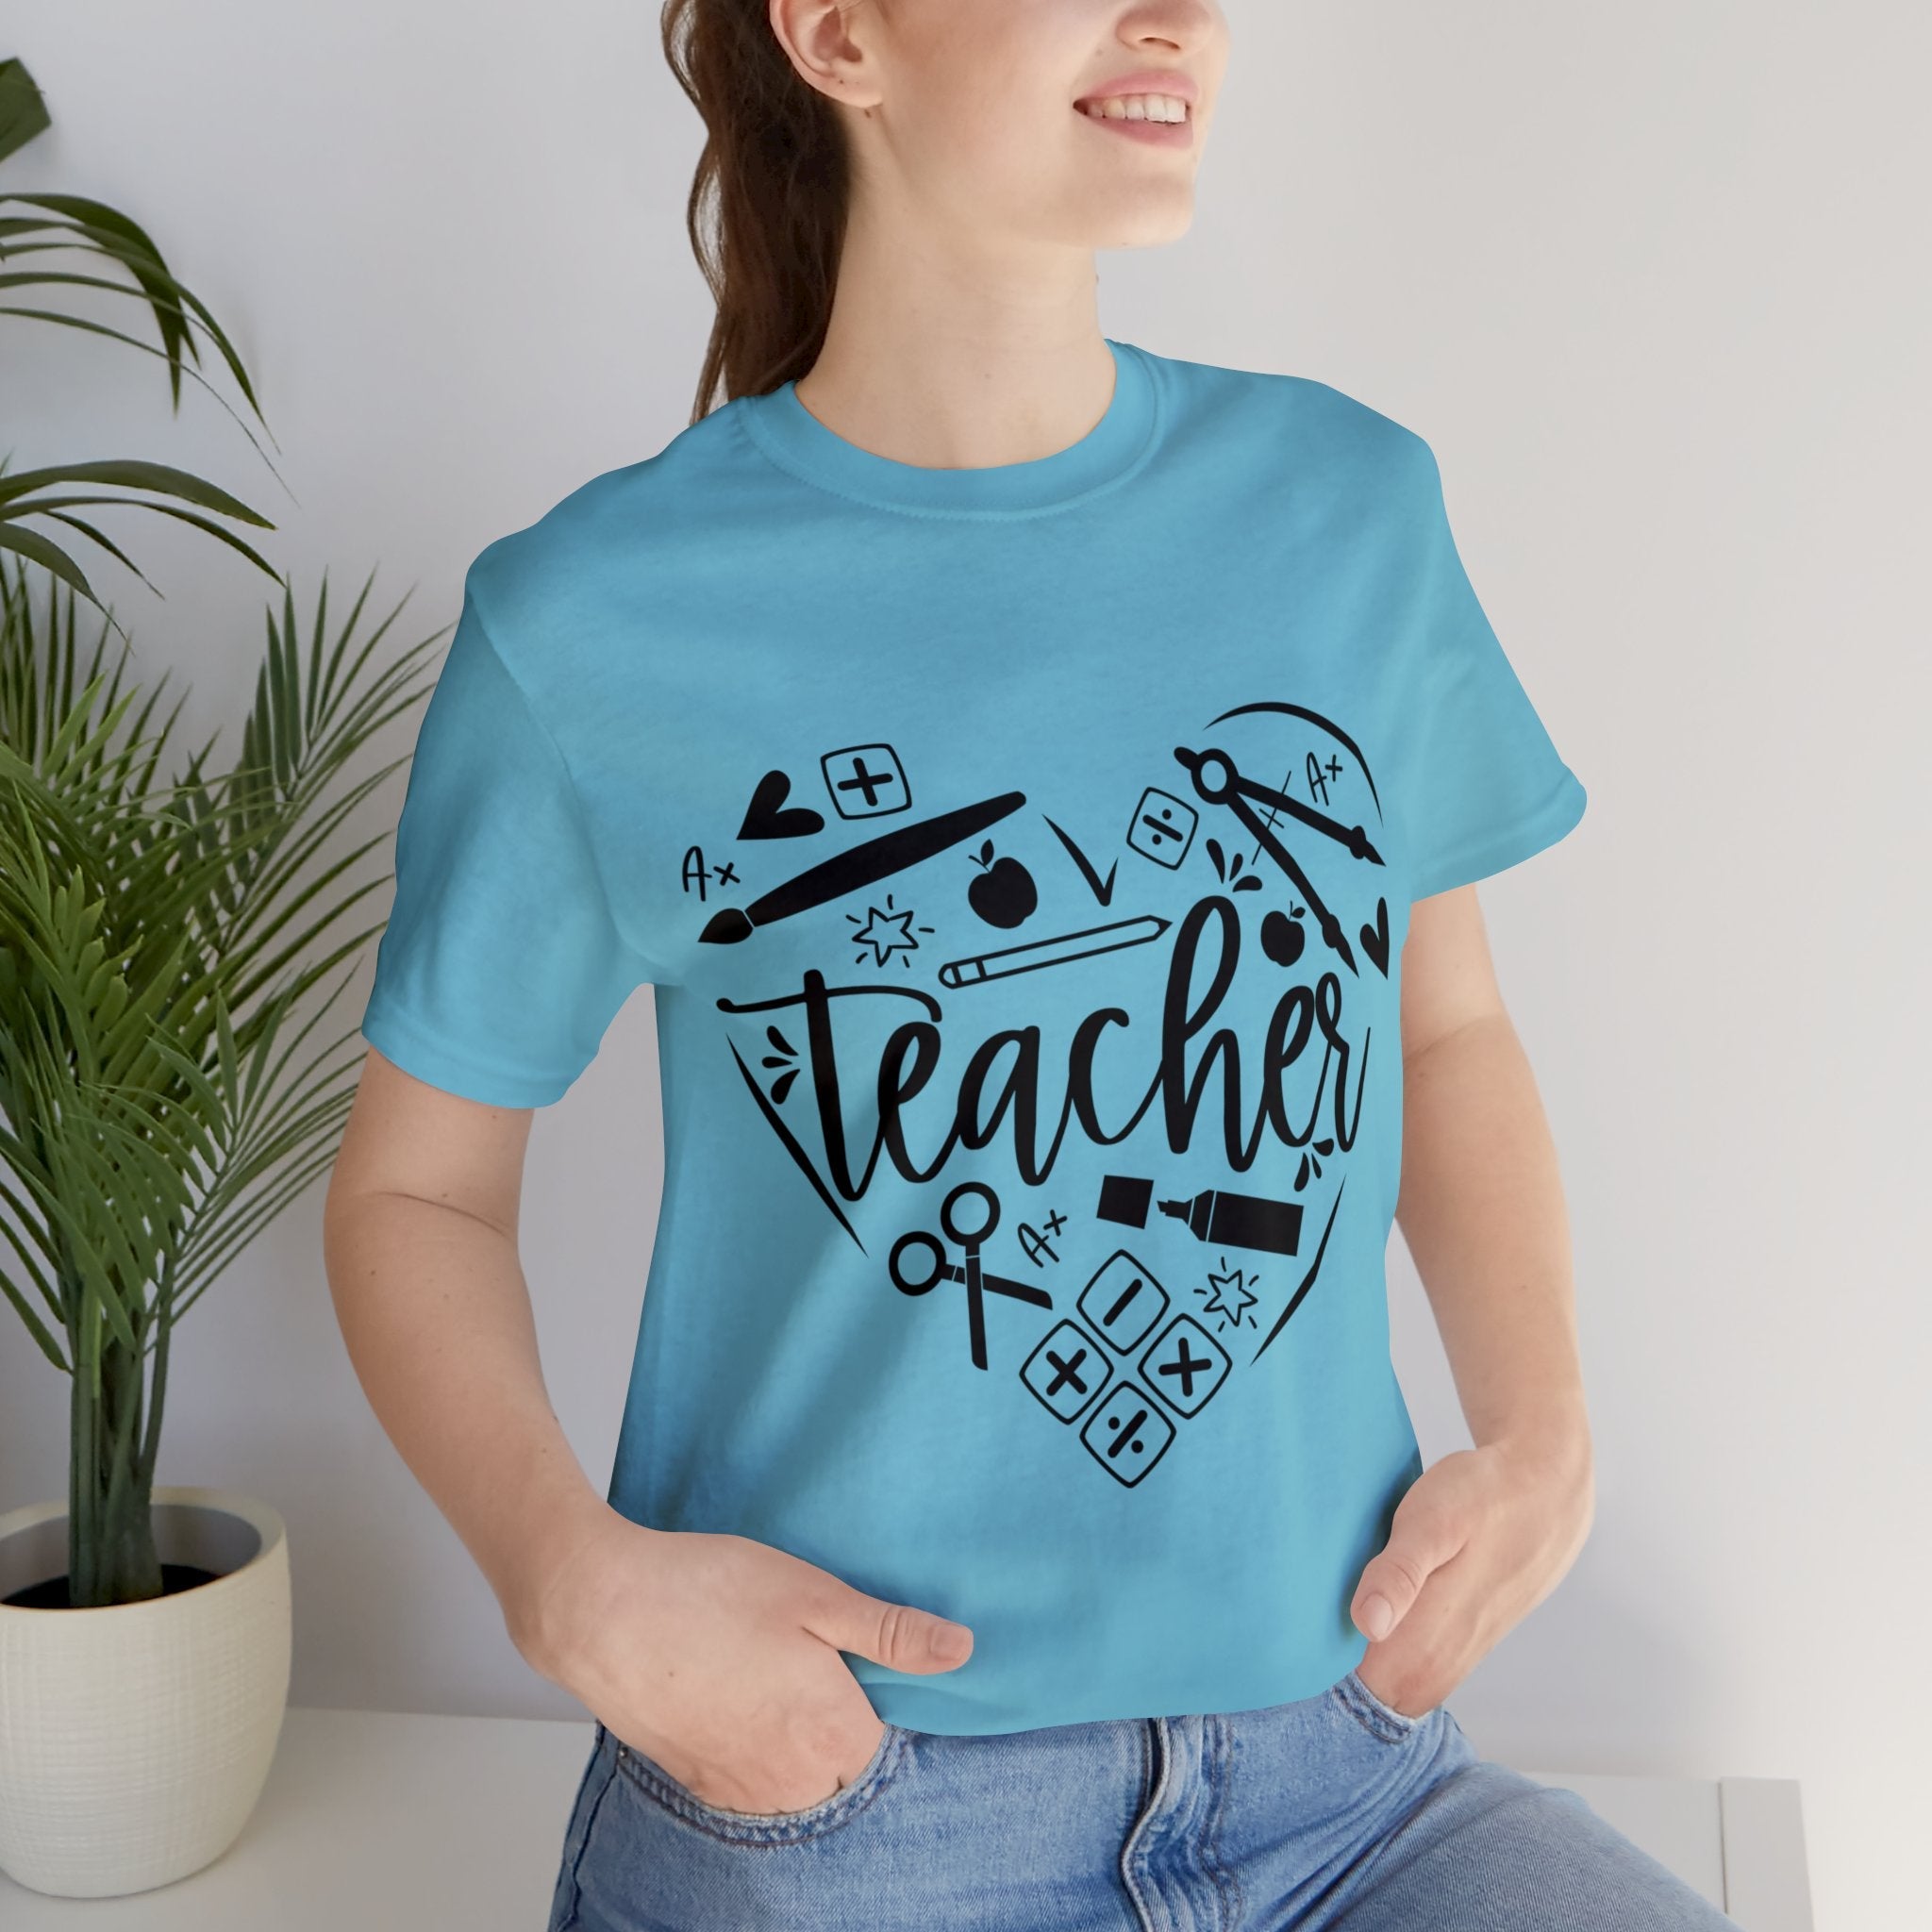 Heart of Teacher | Printed Women Teacher T-Shirt